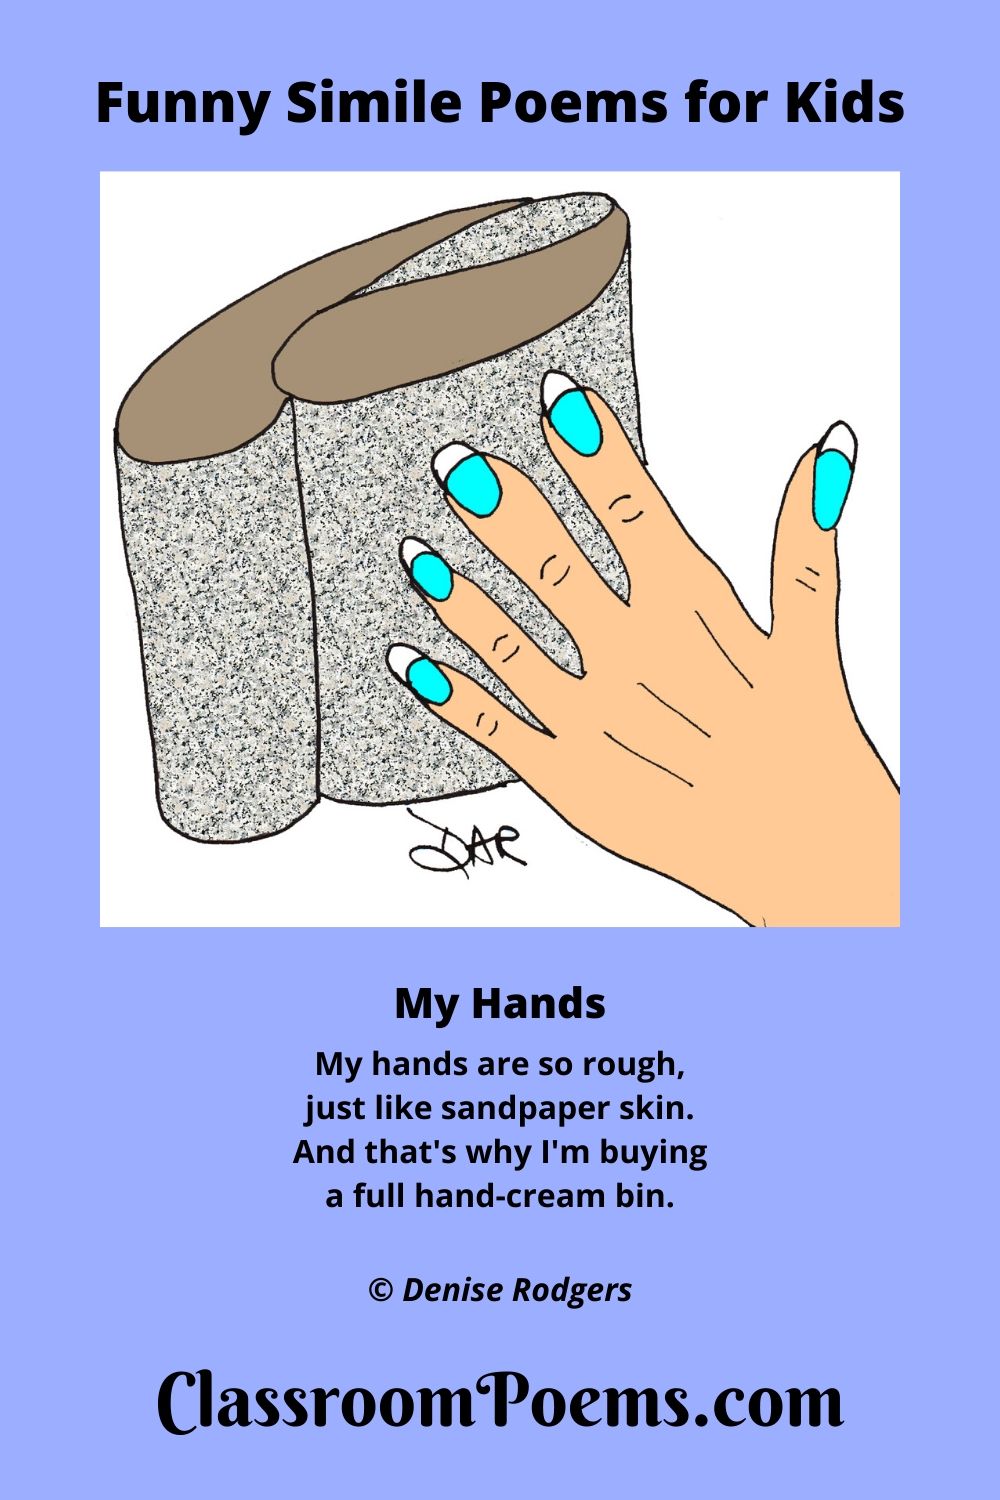 Rough hands. Sandpaper hands.